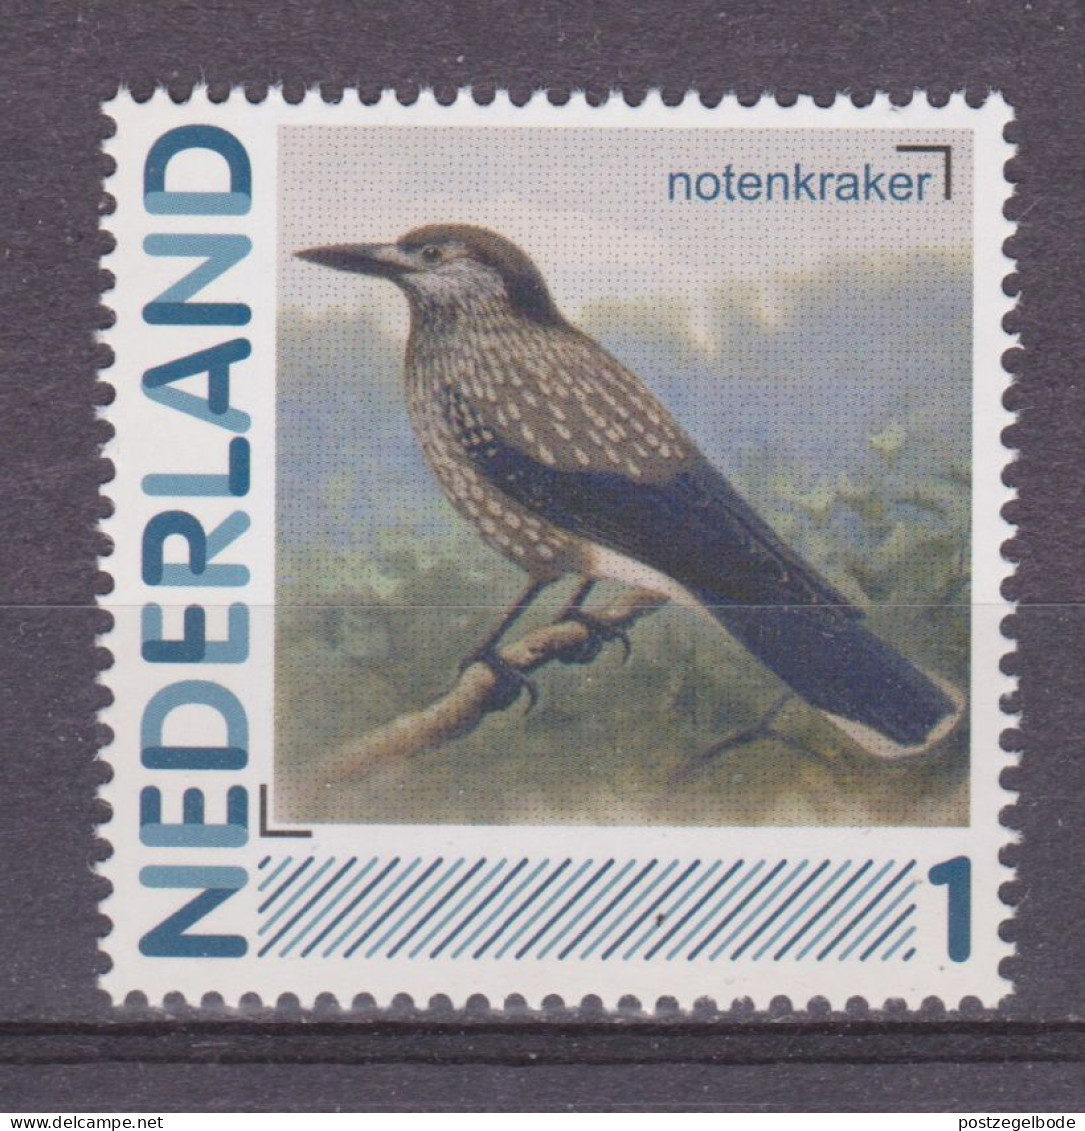 Netherlands Nederland Pays Bas Holanda Niederlande MNH ; Notenkraker Vogel Ave Bird Oiseau - Coucous, Touracos